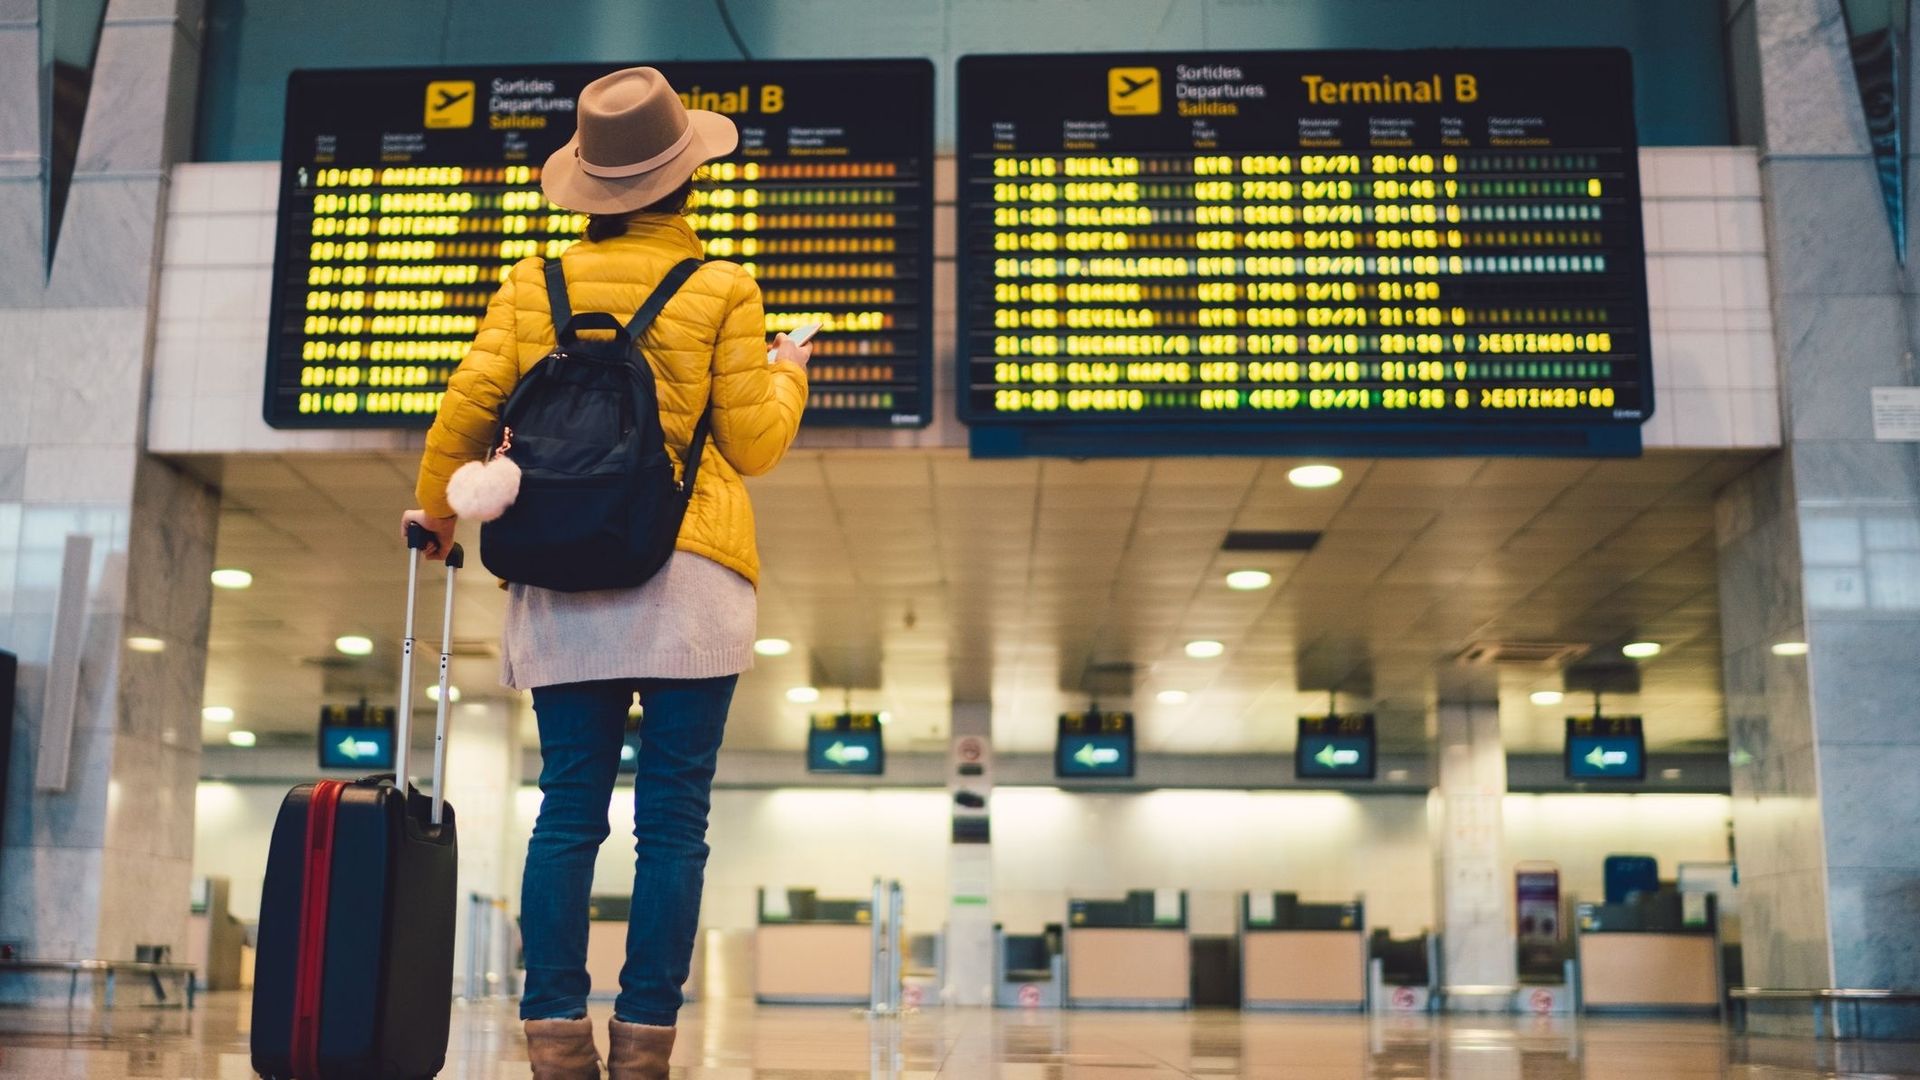 Jeune femme à l’aéroport de Barcelone vérifiant les horaires (illustration).